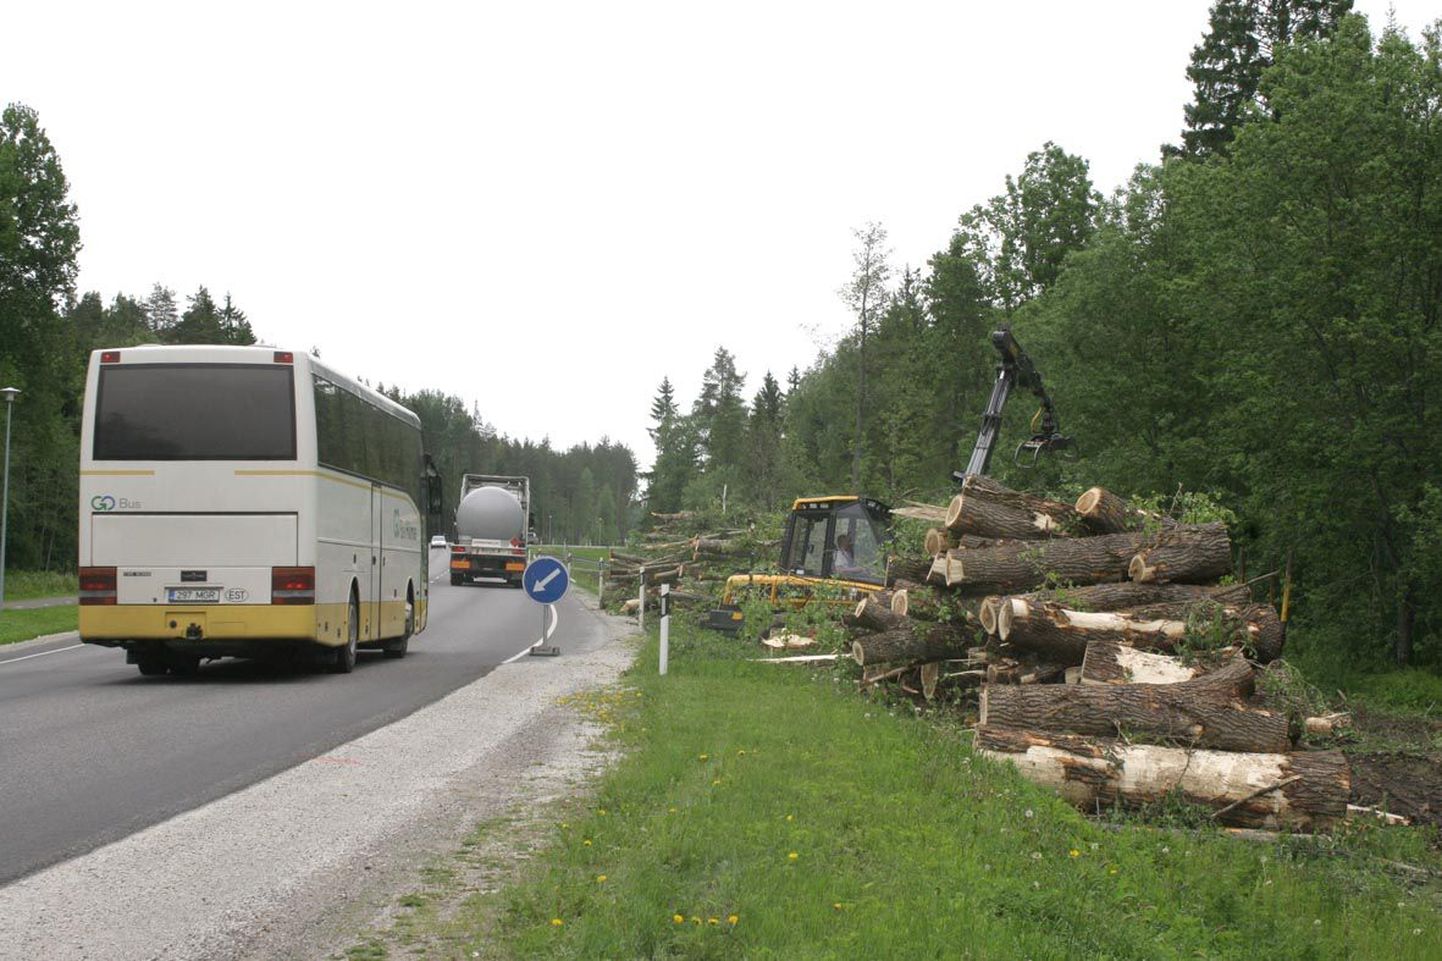 Eelmise nädala lõpus alustati Kirnas teeäärsete puude maha võtmist, millega tehti algust järgmisel nädalal algava 1,2 kilomeetrise teelõigu ümberehitustöödega.